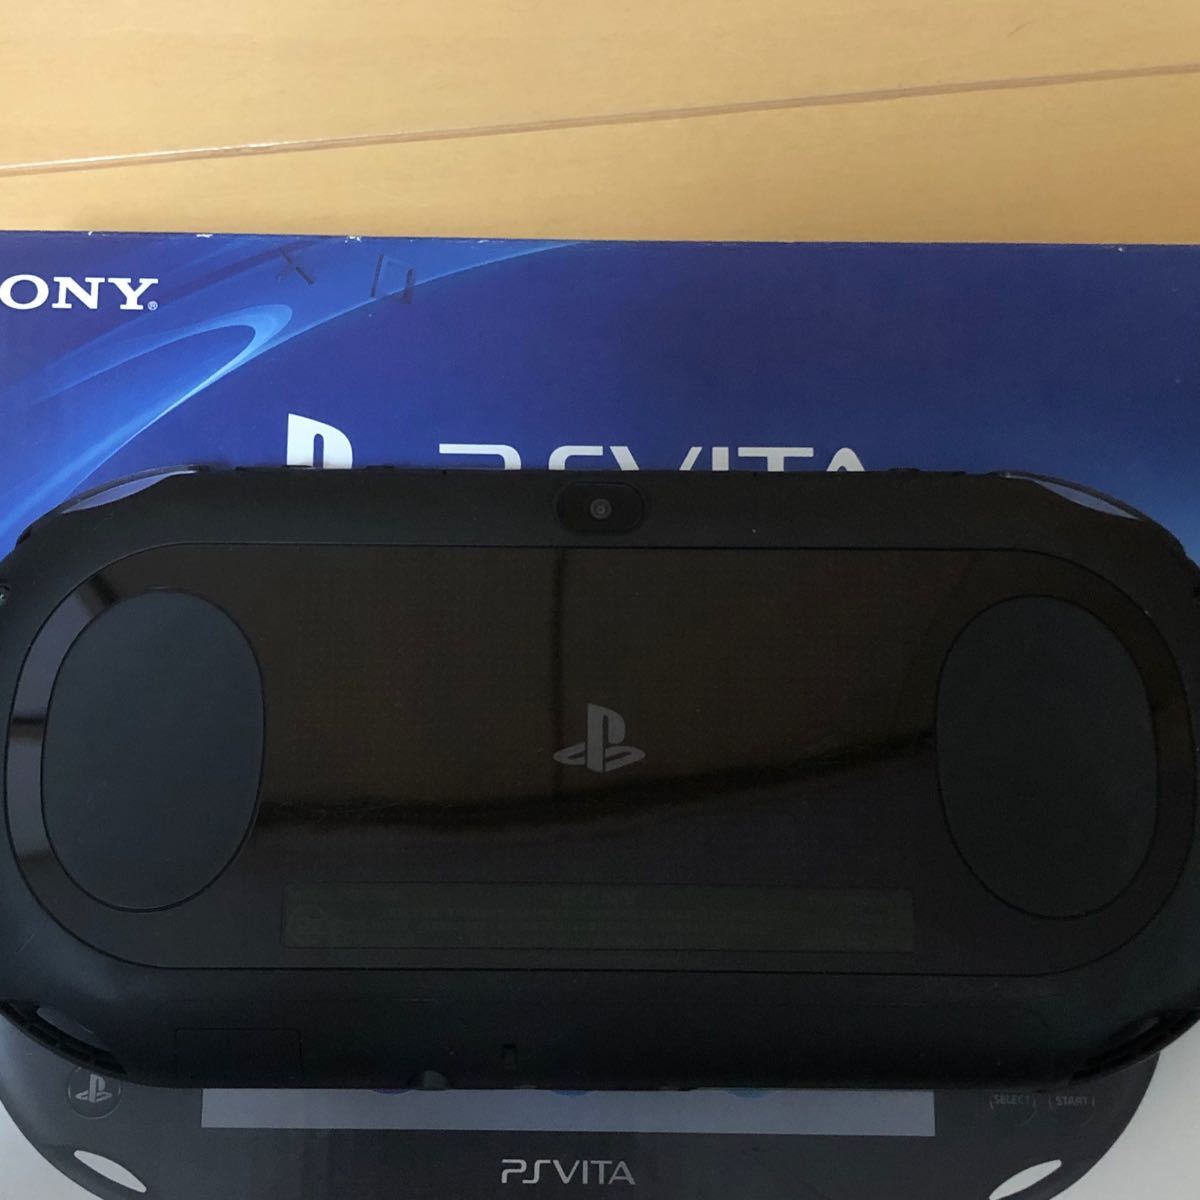 PlayStation Vita（PCH-2000シリーズ） Wi-Fiモデル